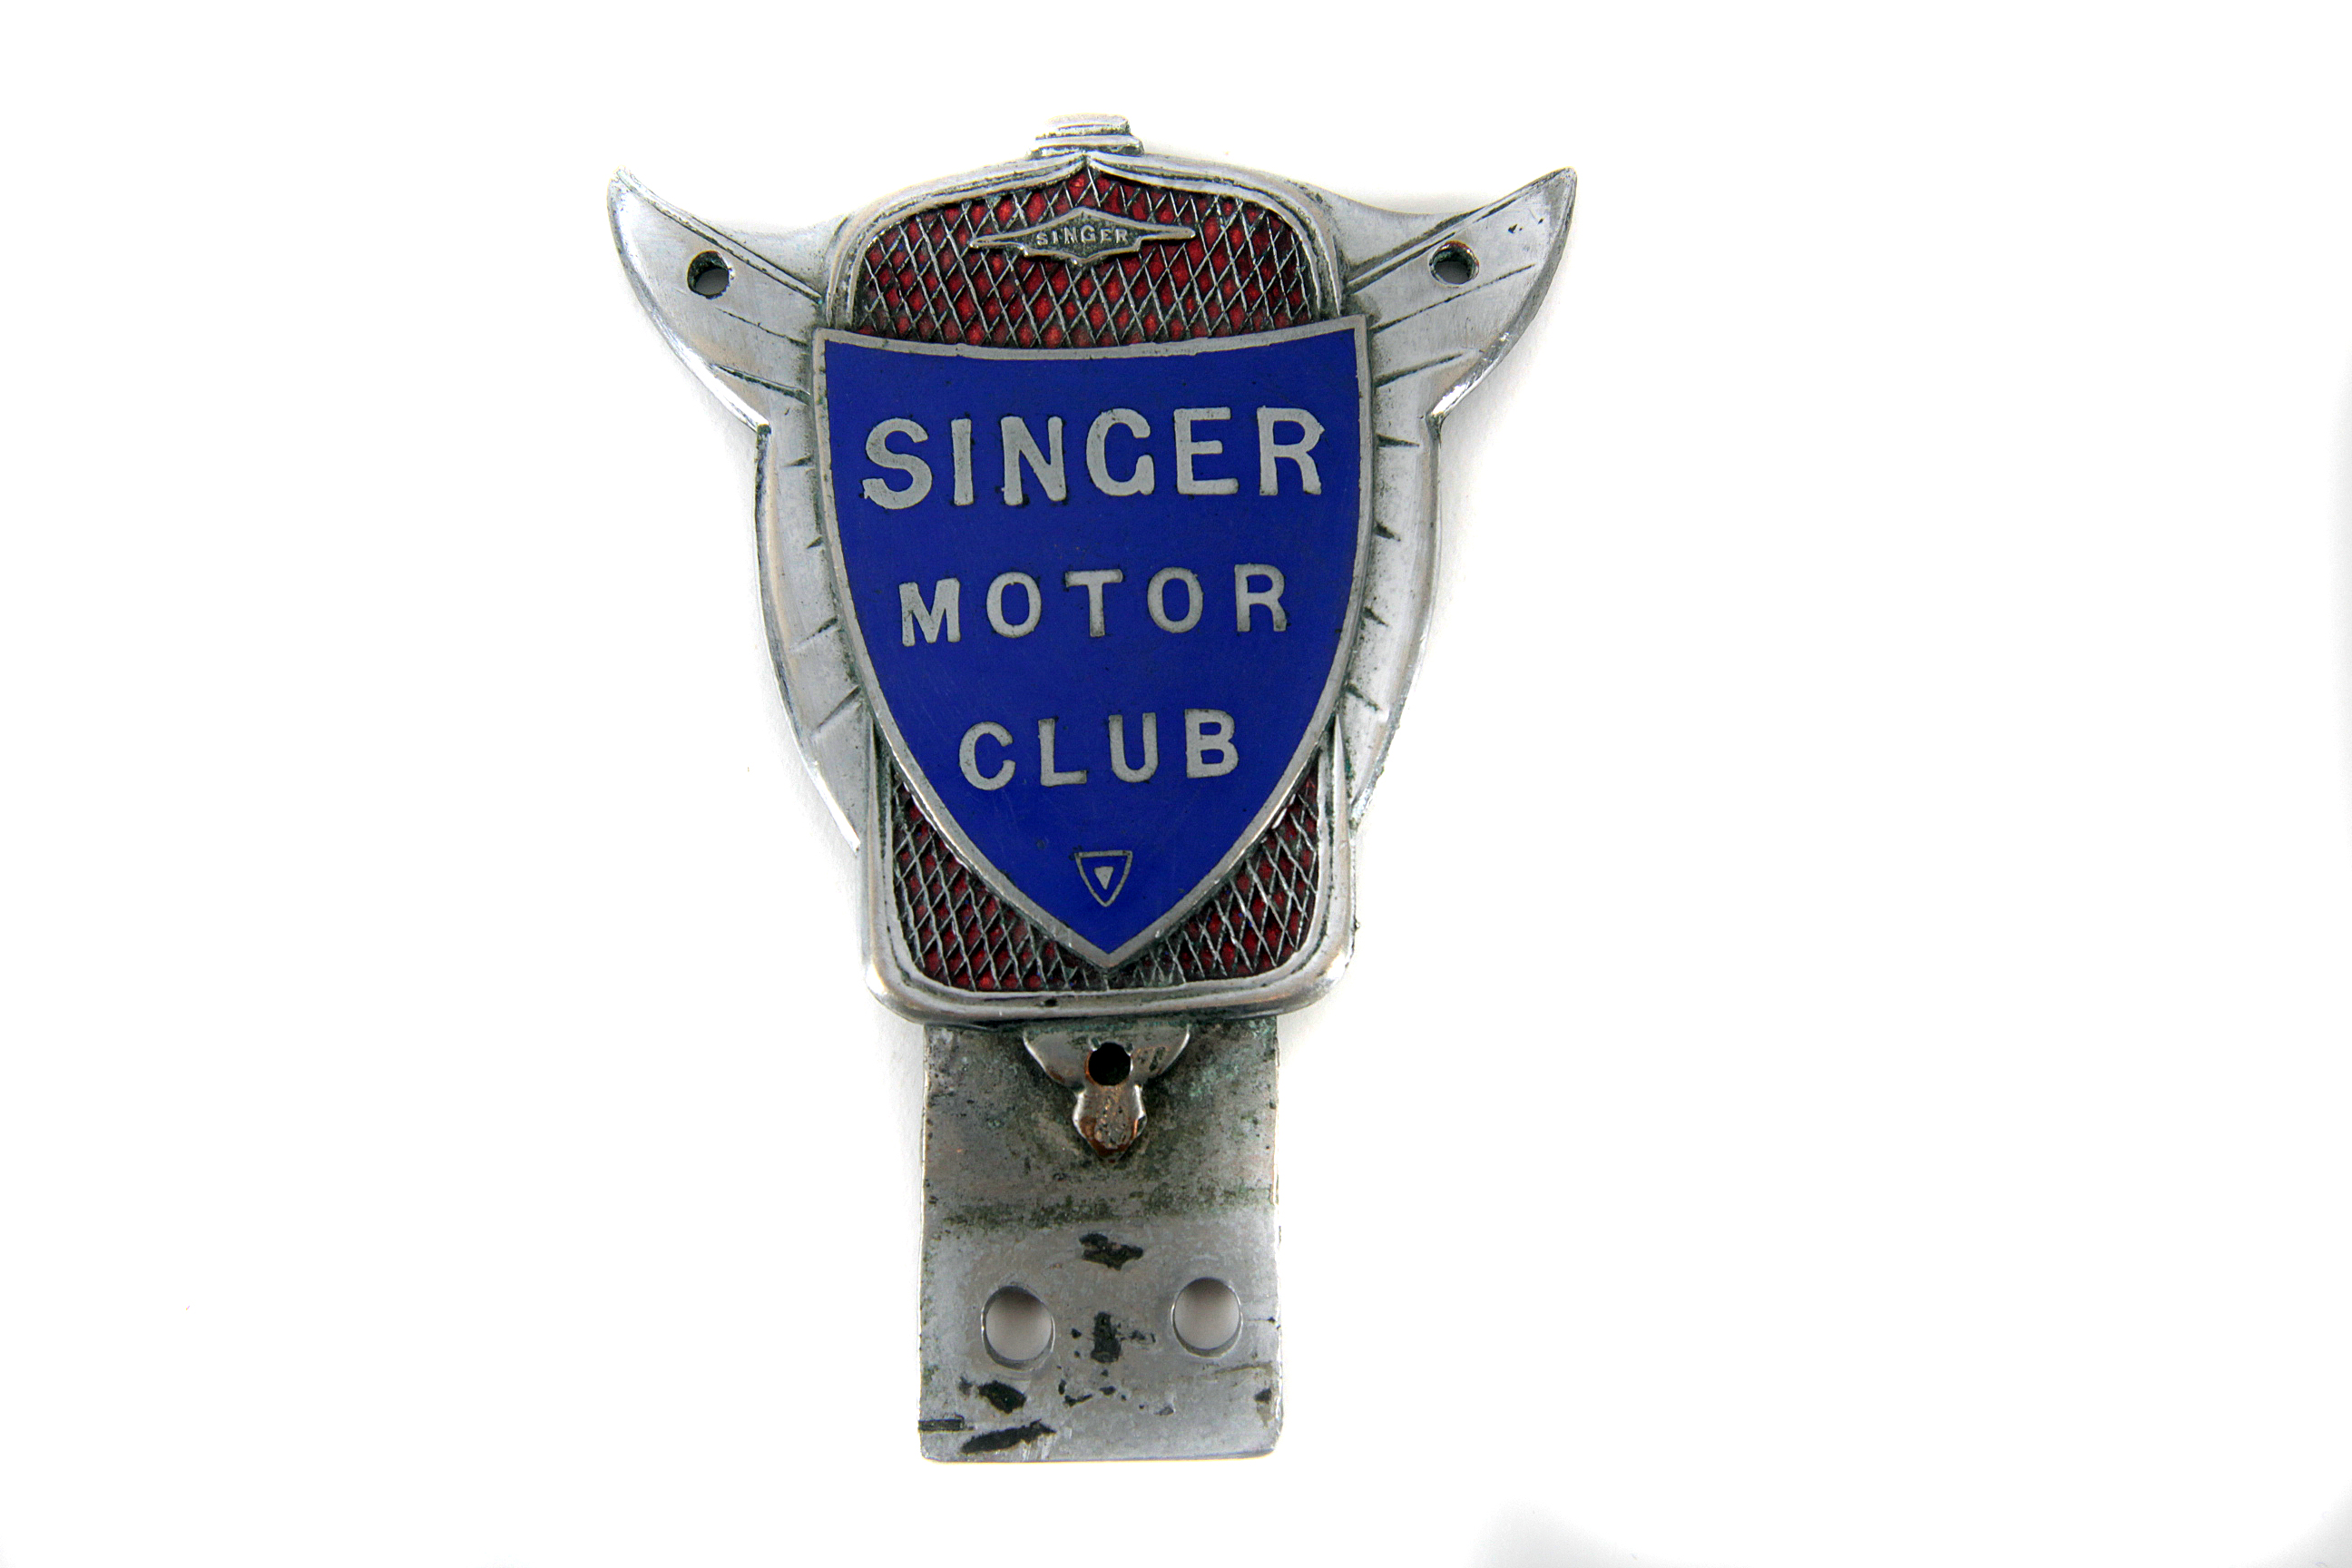 Singer Motor Club rare pre-war member’s car badge c1930s: highly decorative winged radiator motif